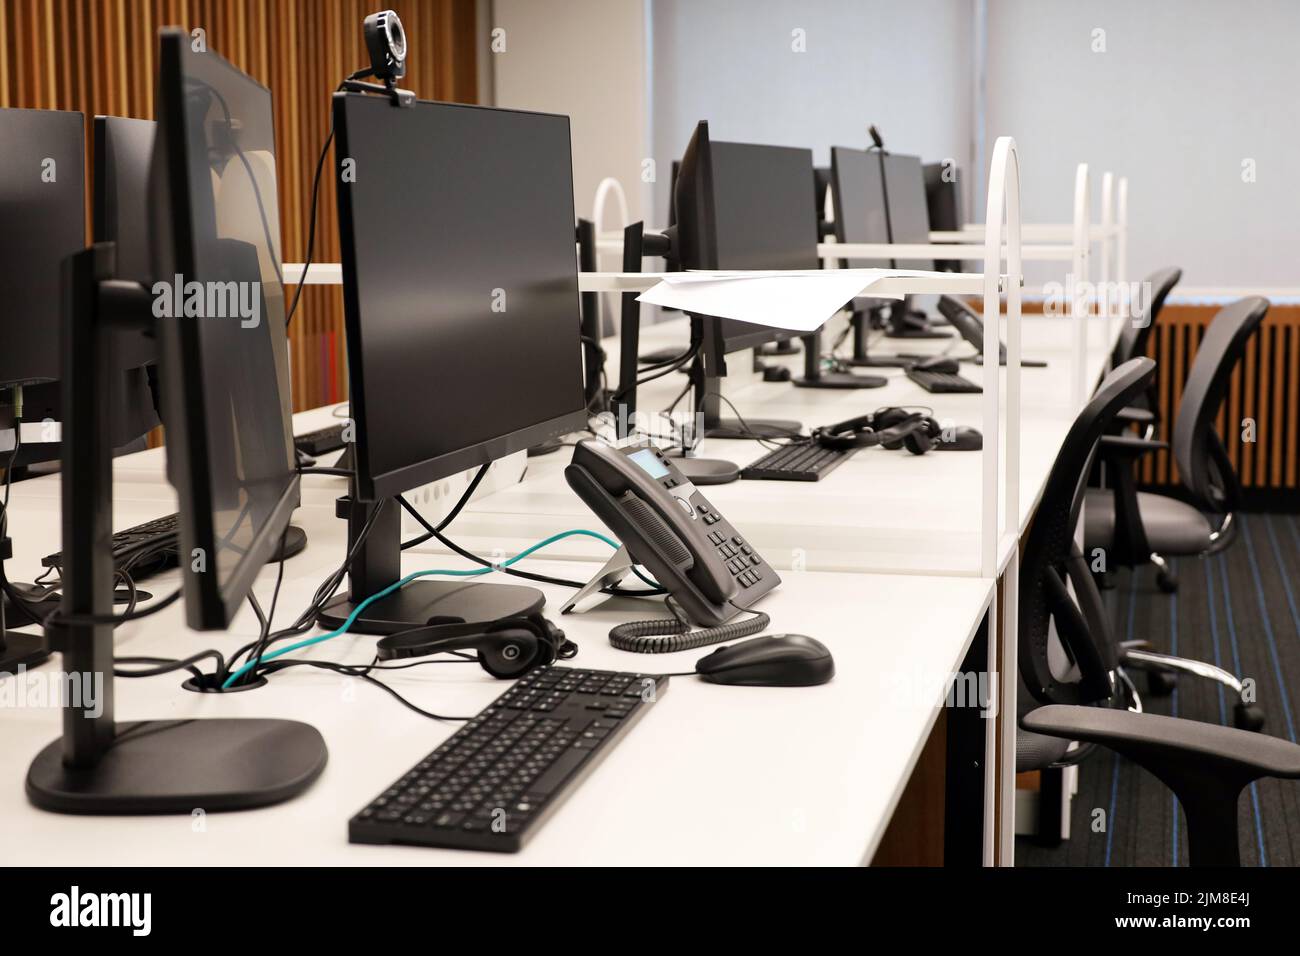 Espace de bureau avec moniteurs PC, téléphones et casques sur les tables. Espace de travail des collègues, centre d'appels vide, entreprise Banque D'Images